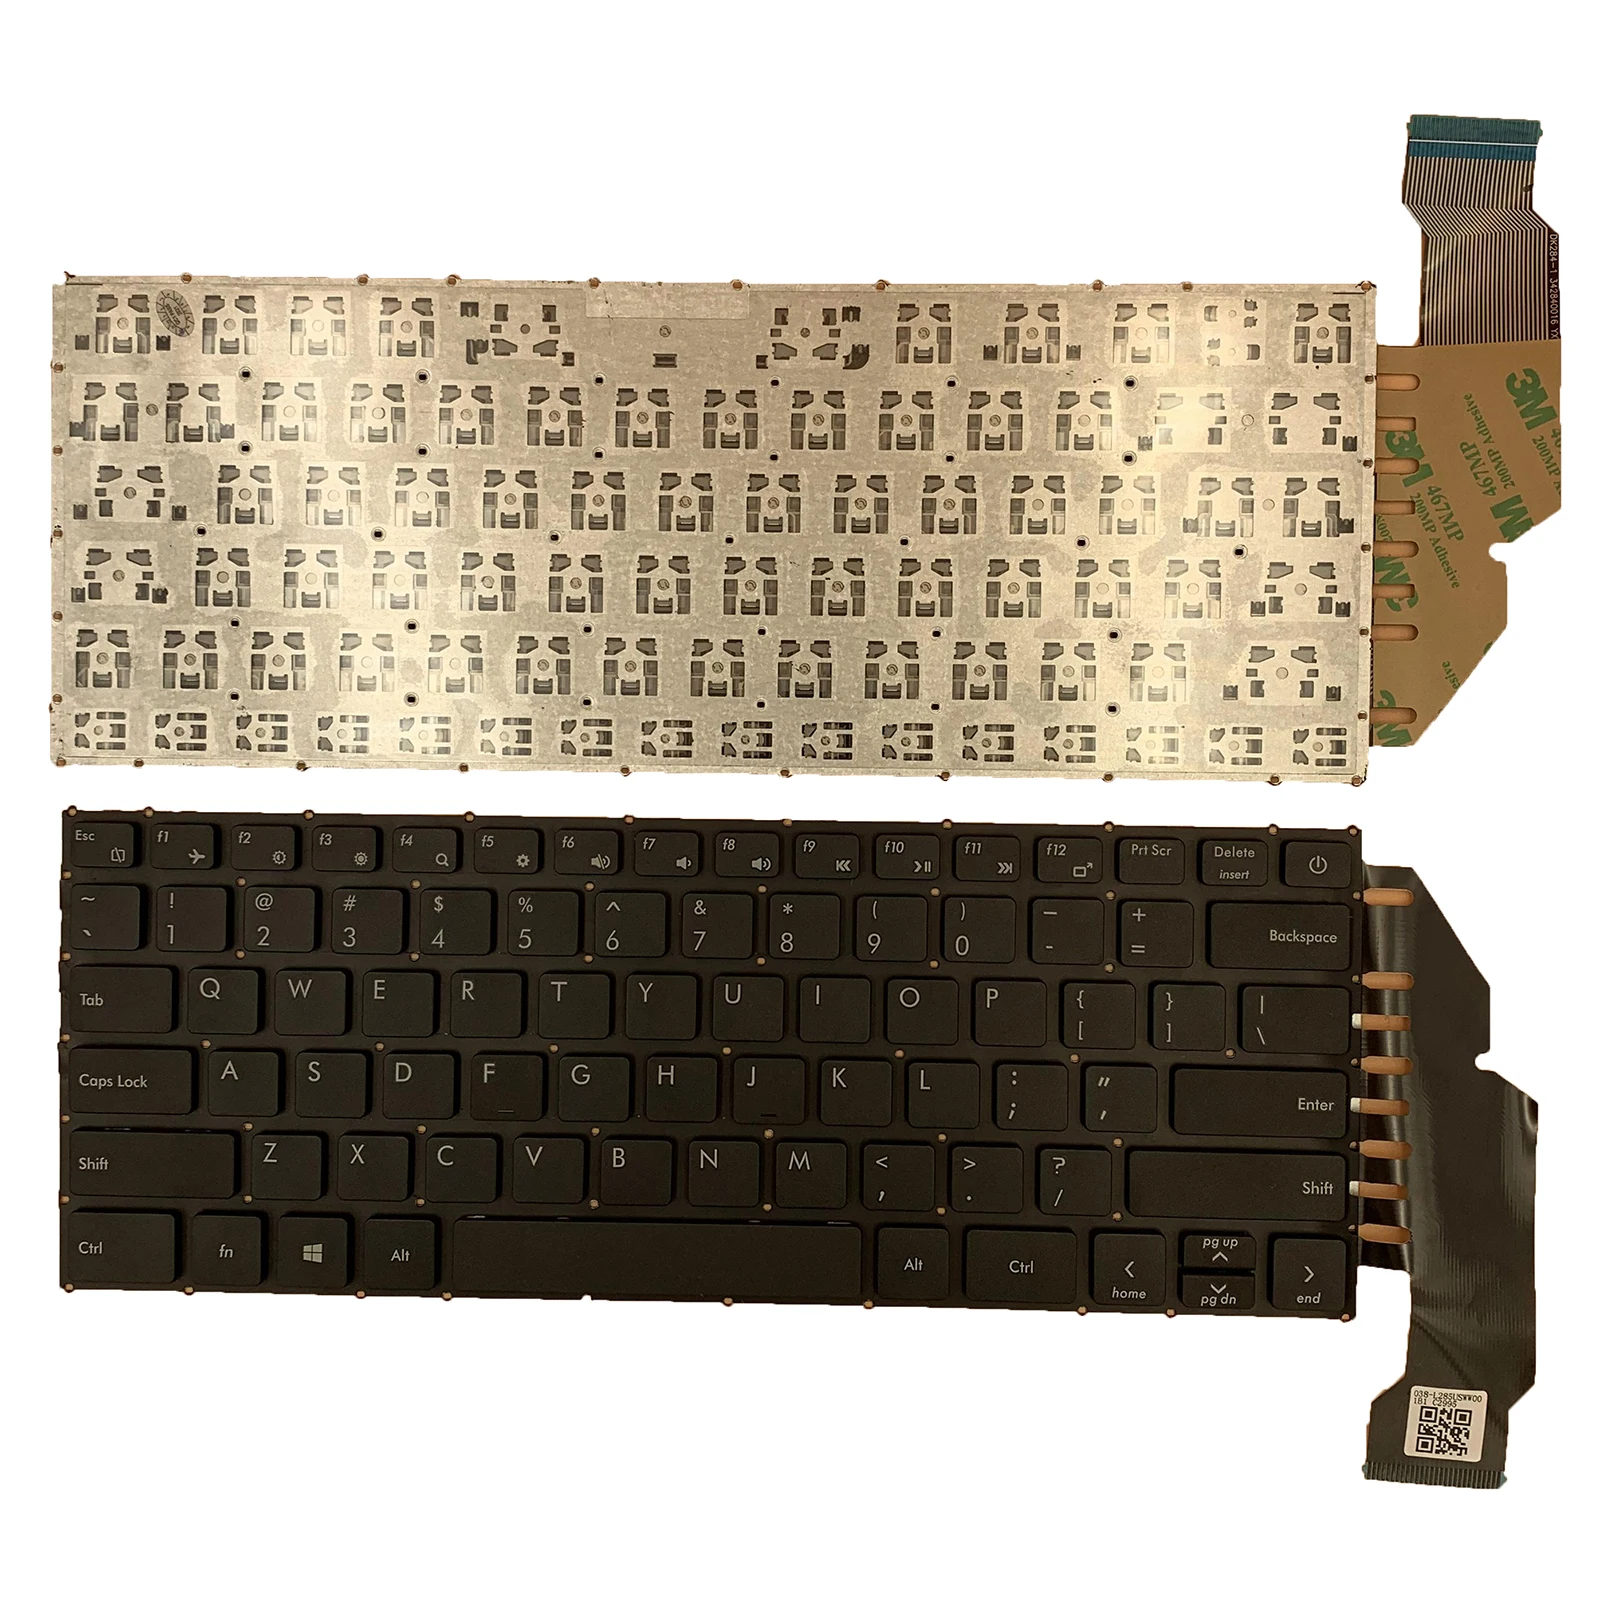 

Новая клавиатура для AVITA Liber NS14A6 US DK-284-1 342840016 с английской раскладкой